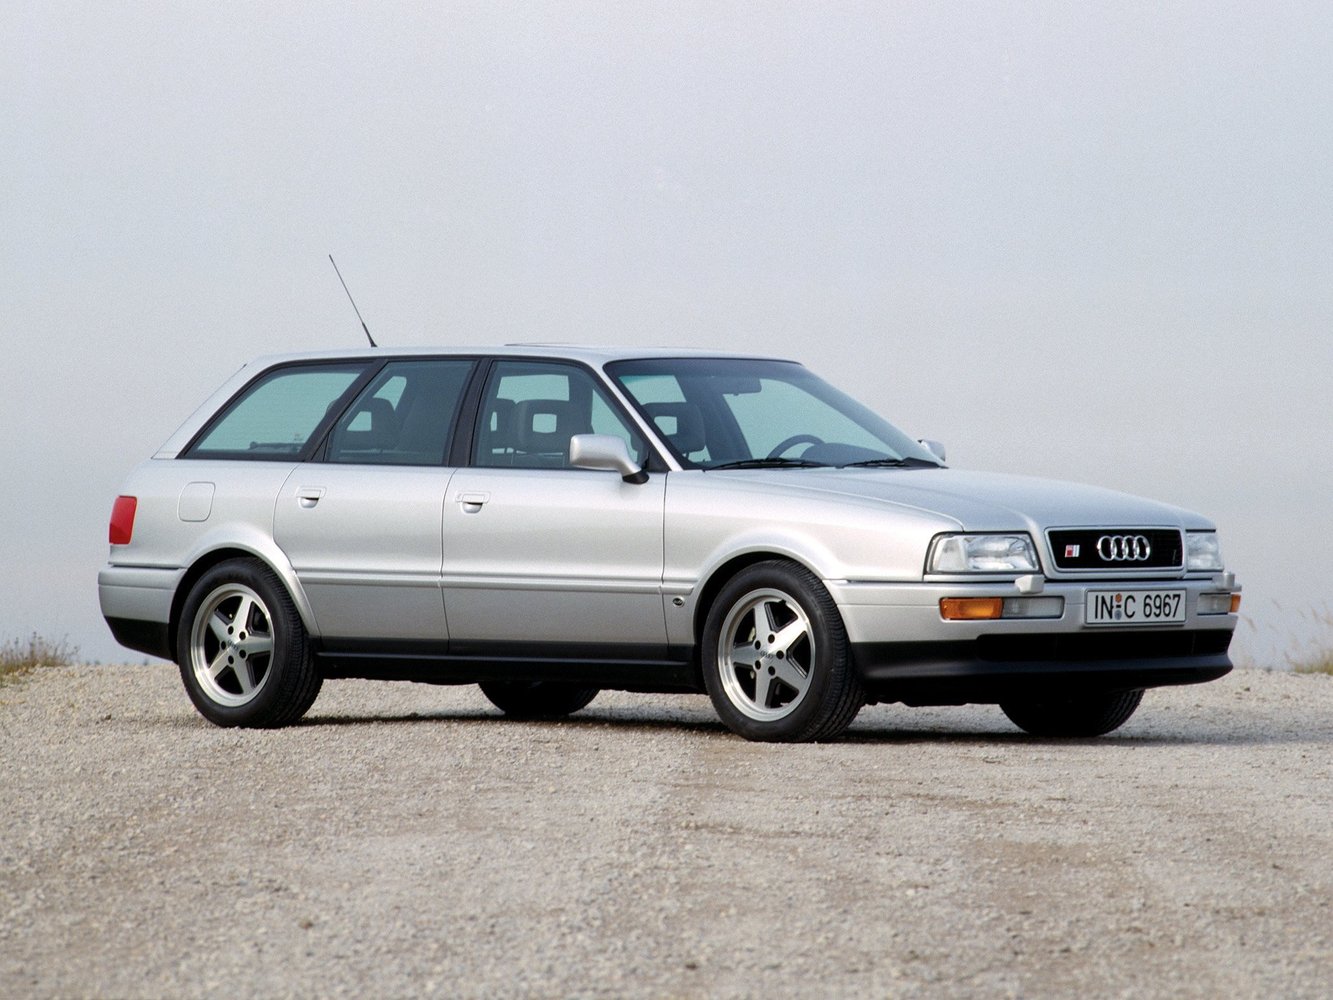 Audi S2 1990 - 1995